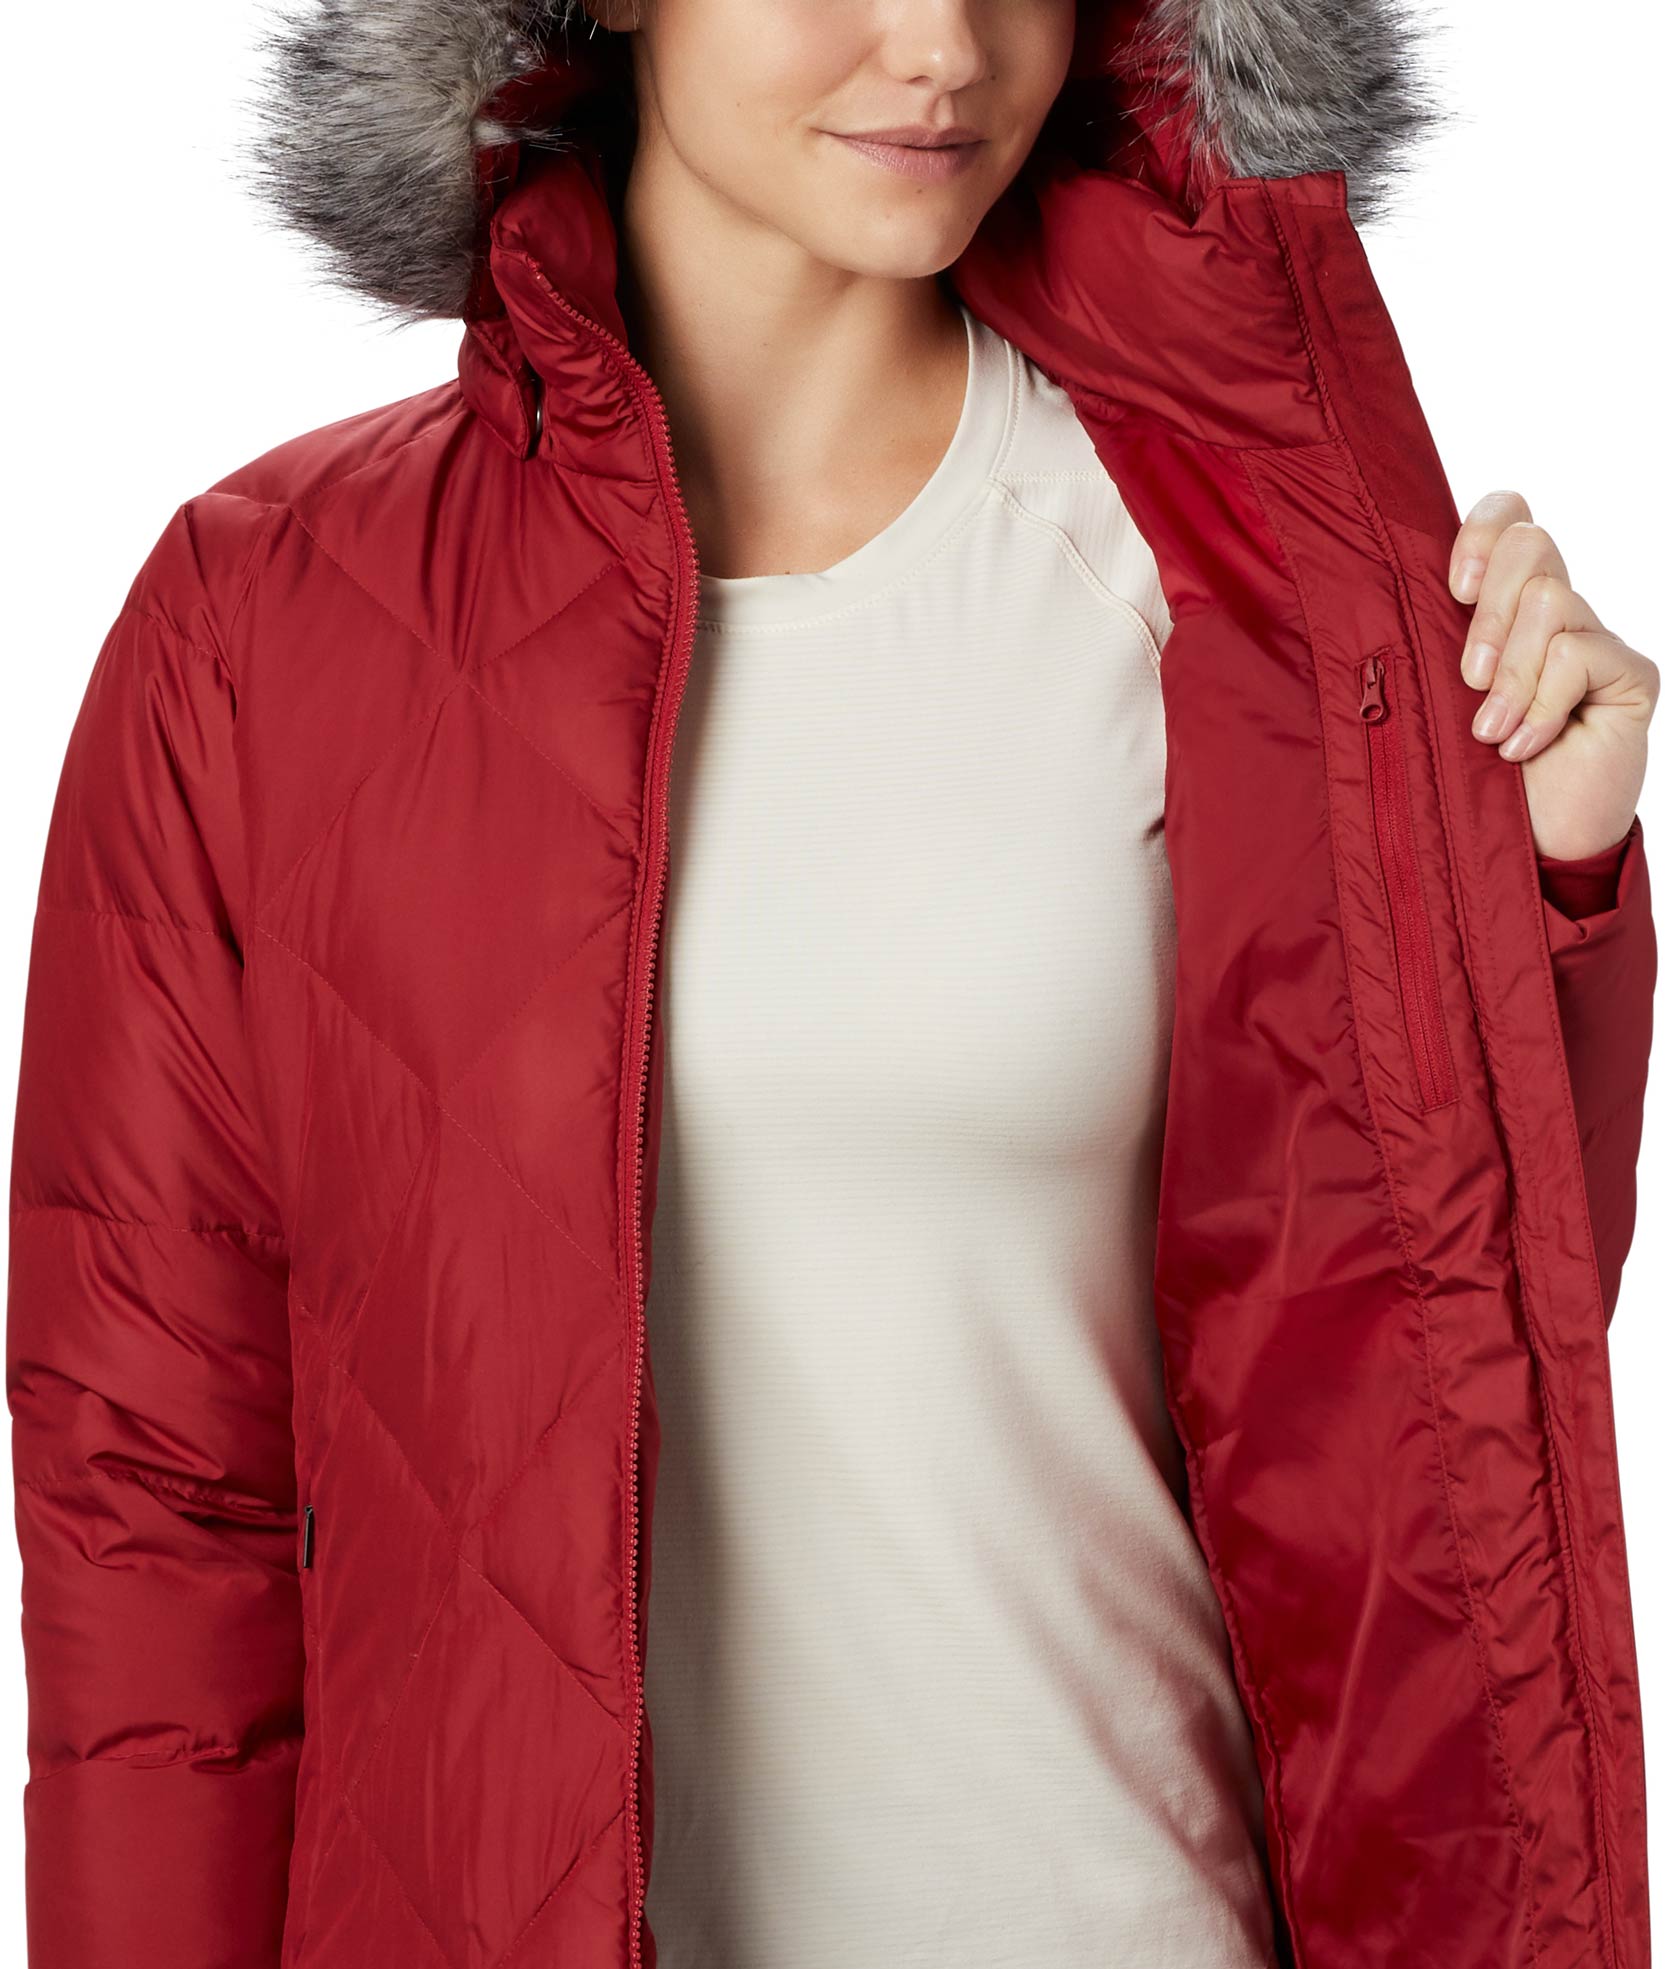 Women’s winter jacket